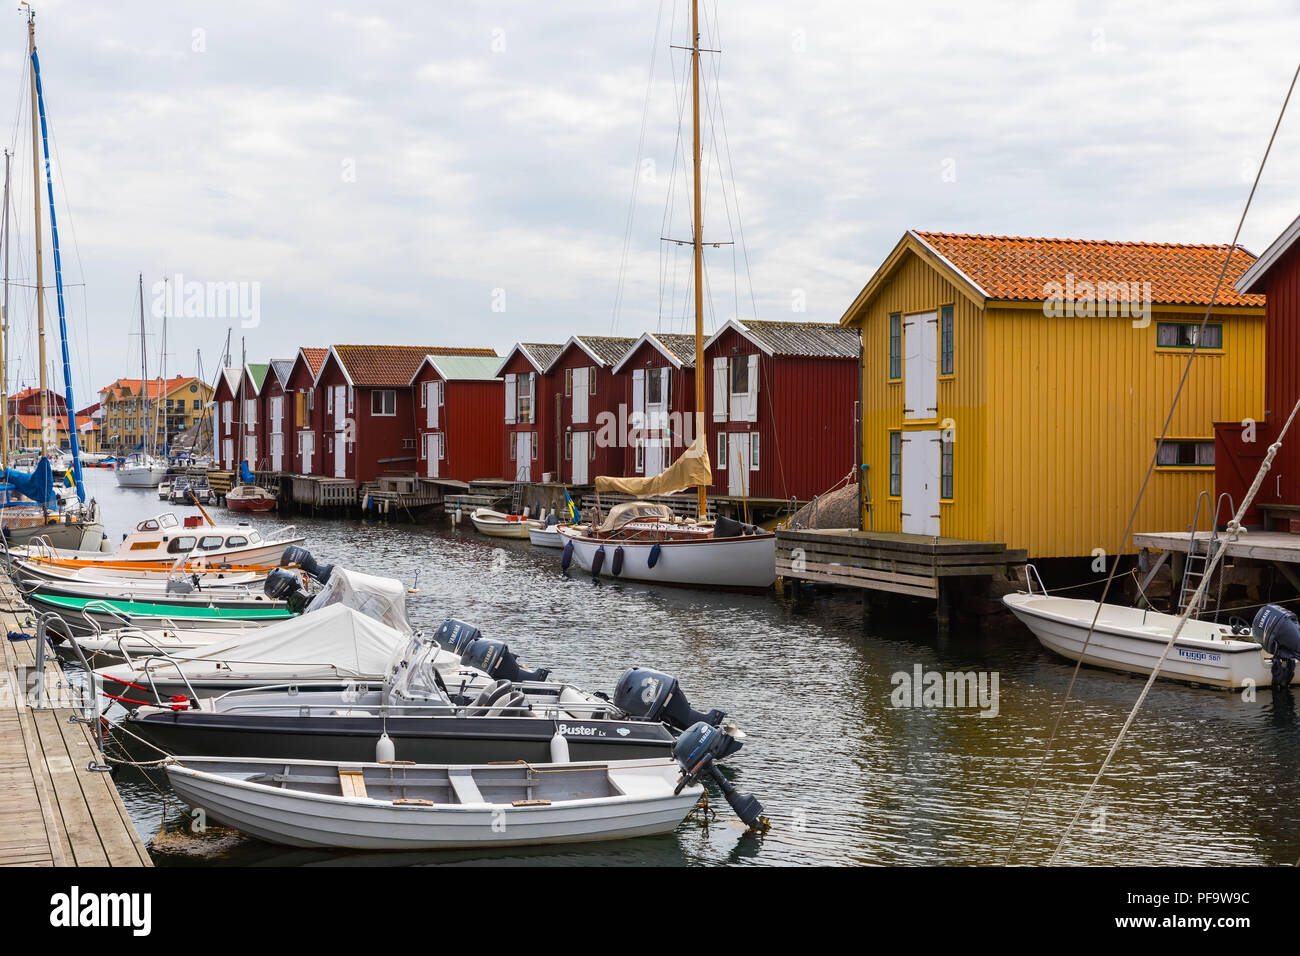 Smögen est une localité située dans le comté de Västra Götaland, en Suède. Il est l'un des quartiers les plus animés de la ville d'été de la côte occidentale de la Suède. Banque D'Images